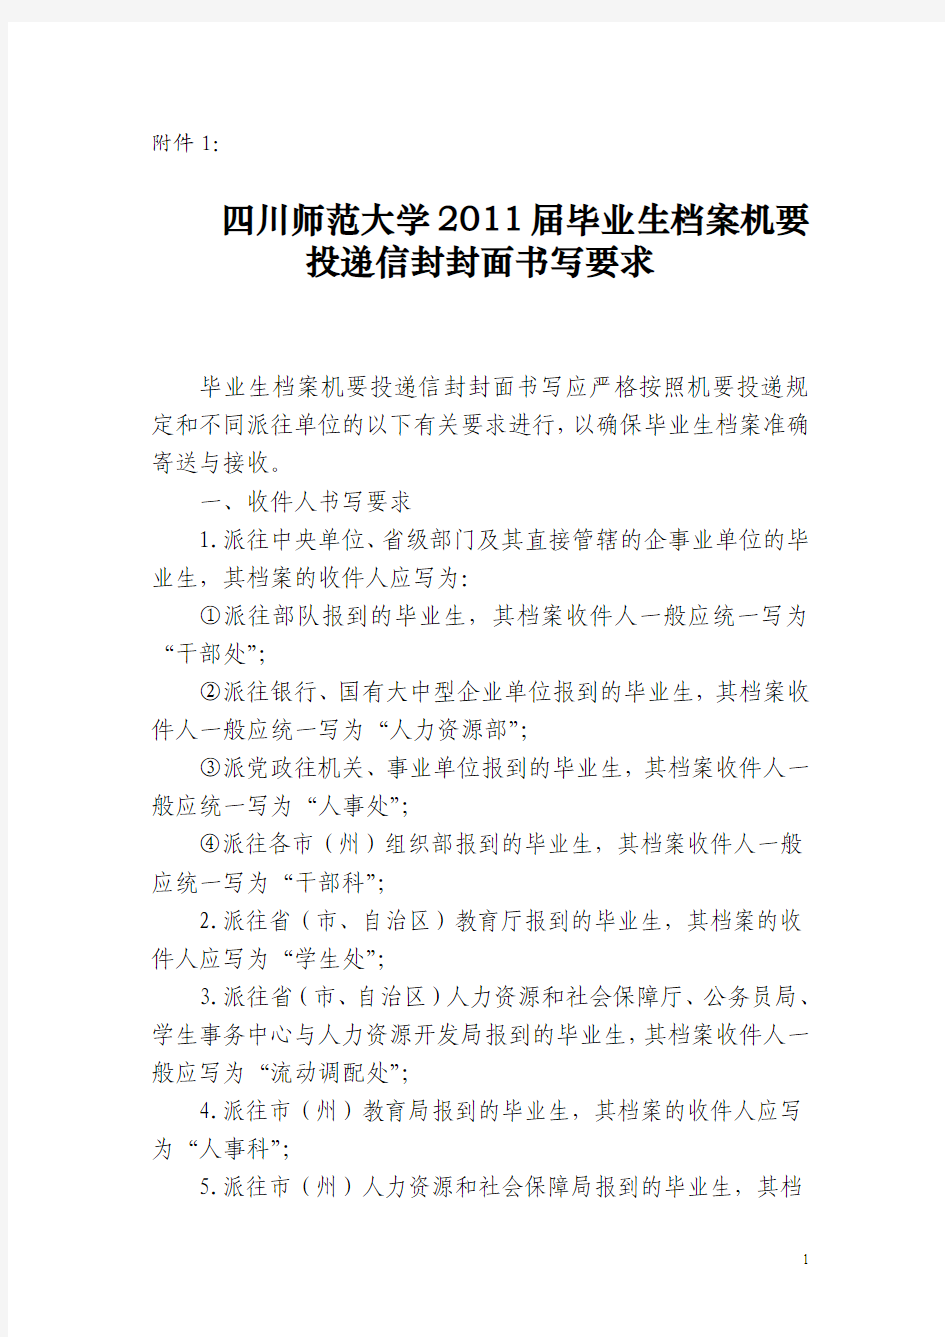 四川师范大学2011届毕业生档案机要投递信封封面书写要求